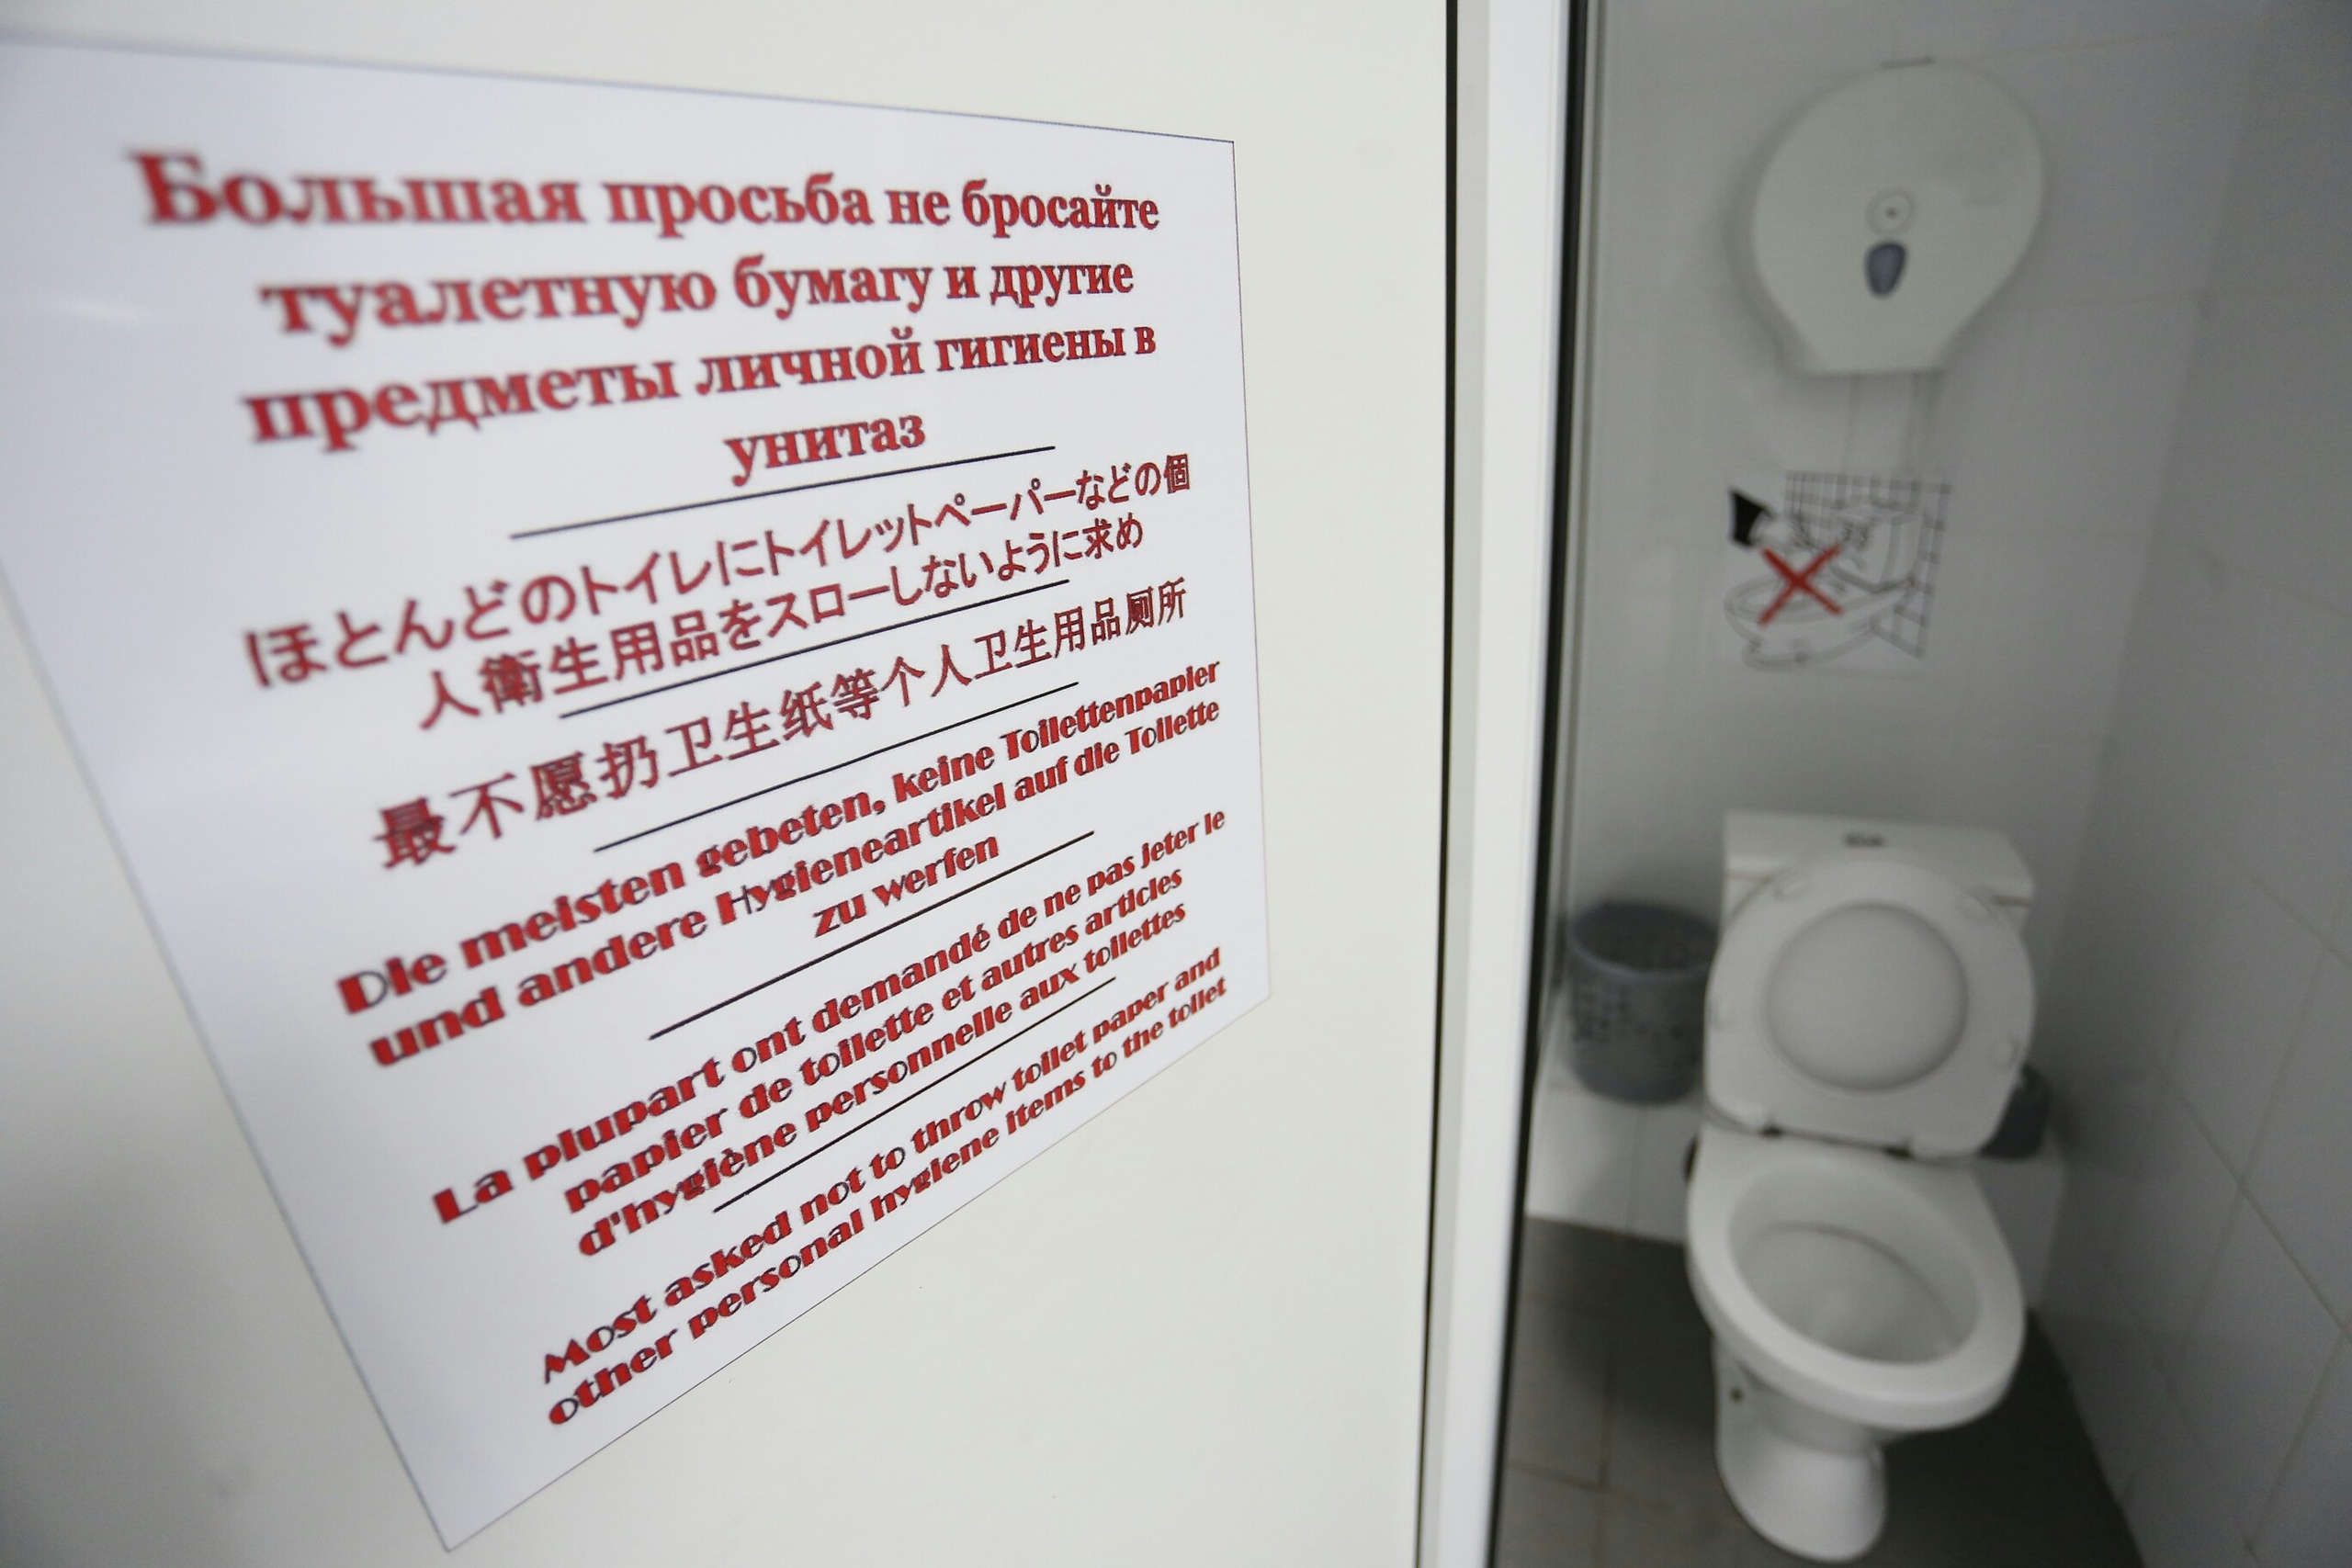 «Не бросайте бумагу в унитаз!»: в общественном туалете в Челябинске сделали надписи на китайском